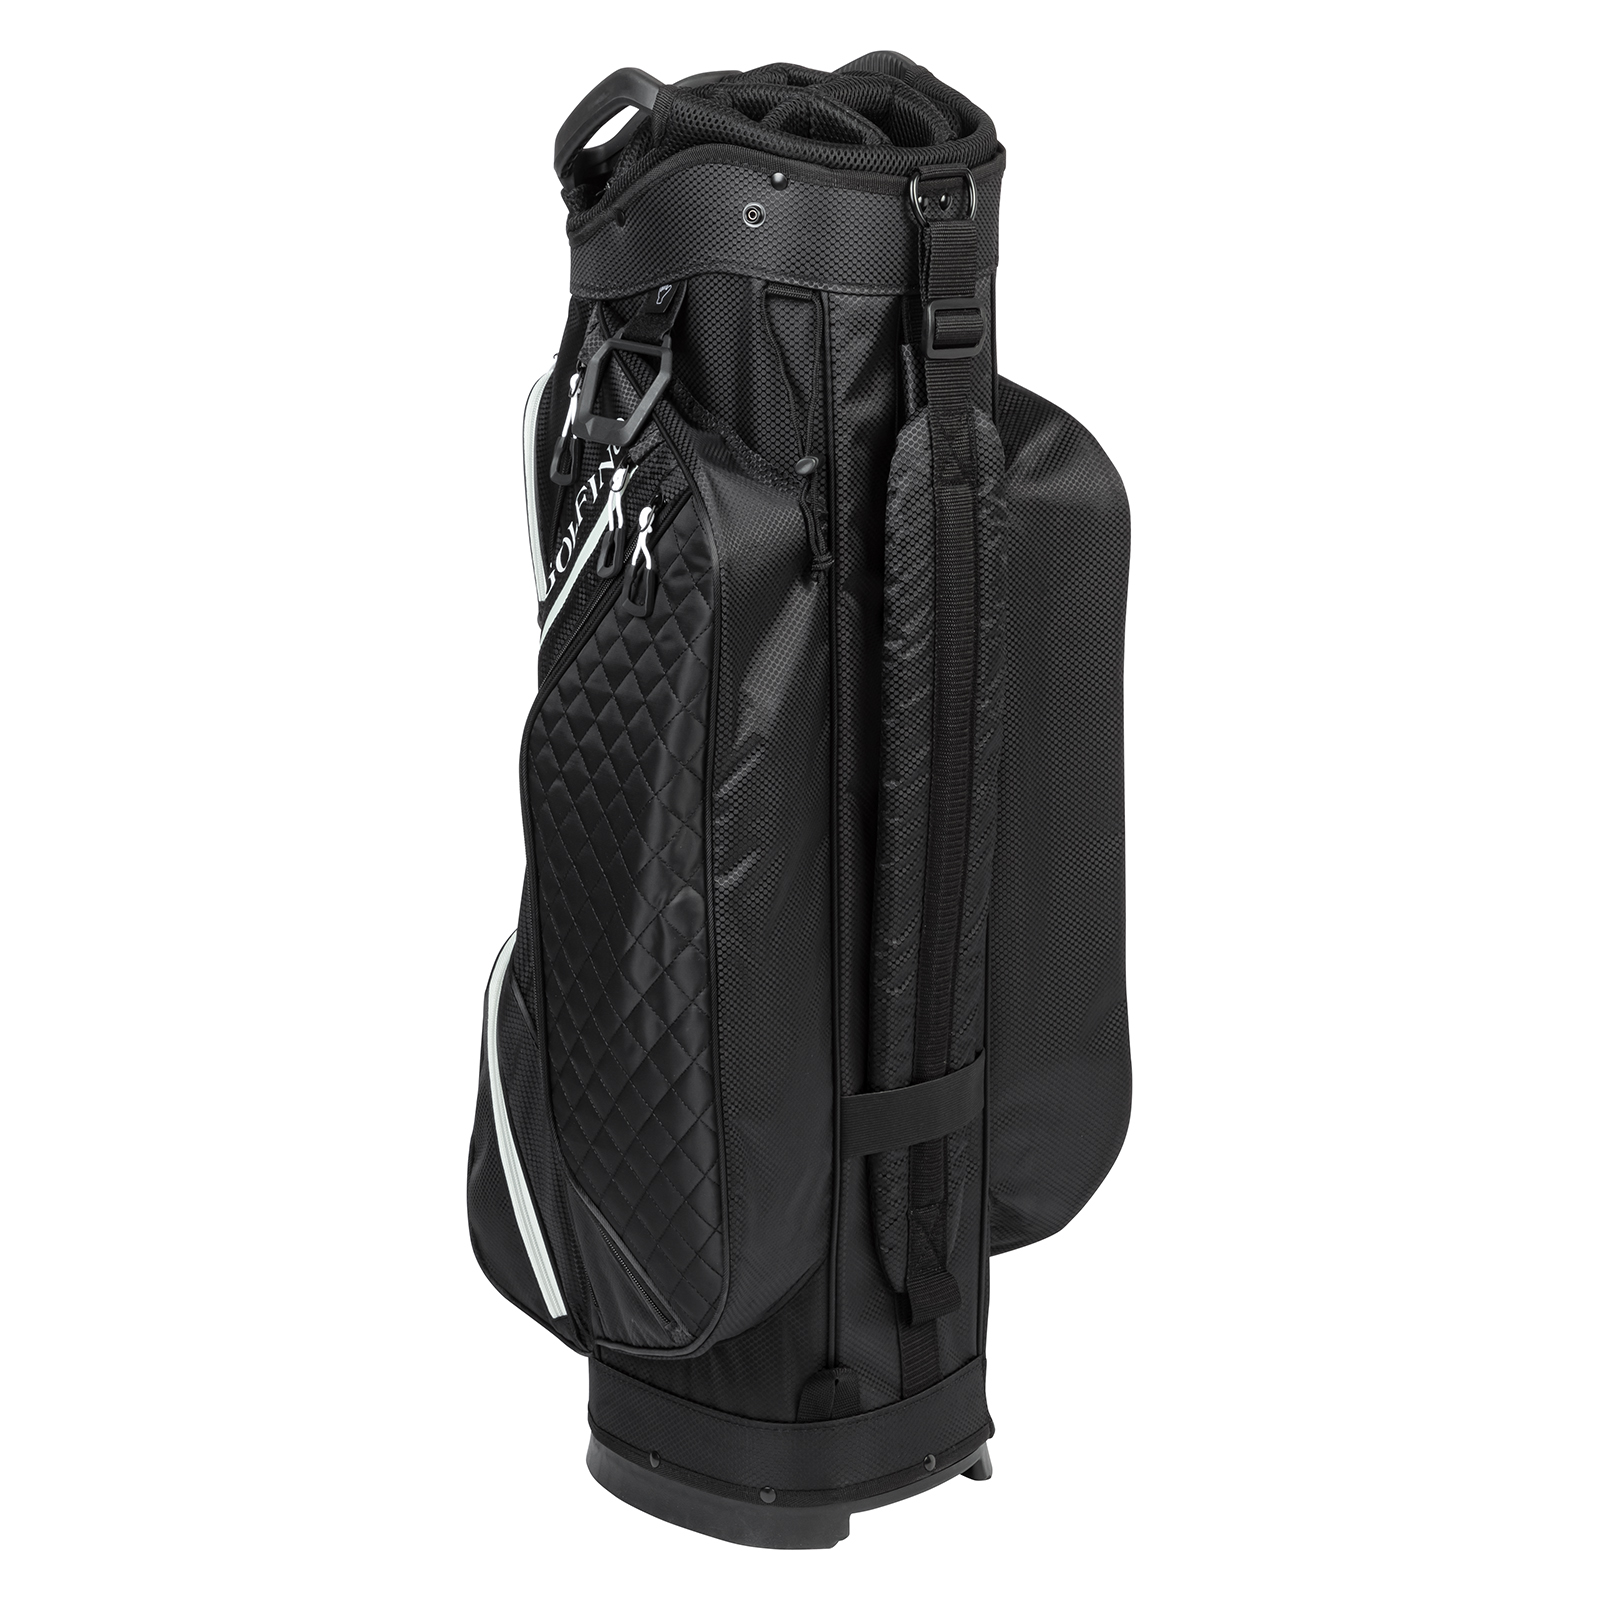 Cart bag with padded shoulder strap